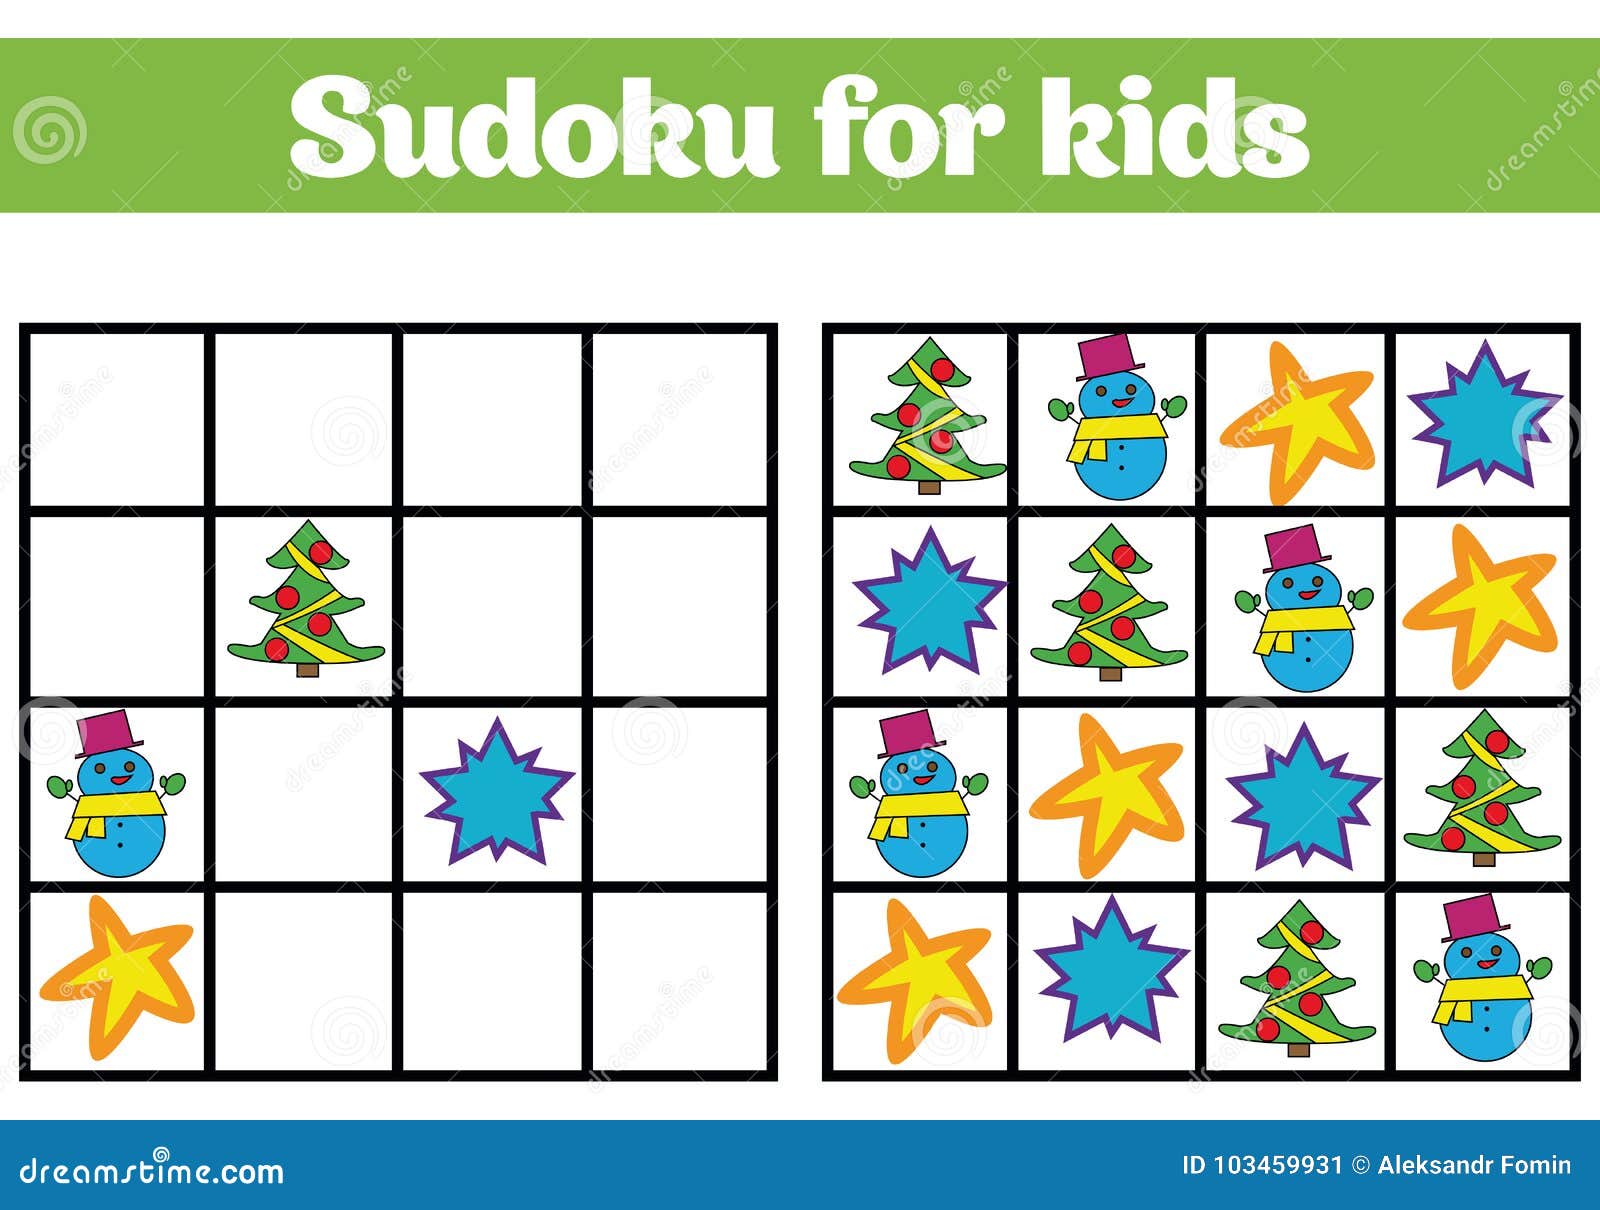 Jogo de sudoku para crianças com fotos. feliz natal e feliz ano novo